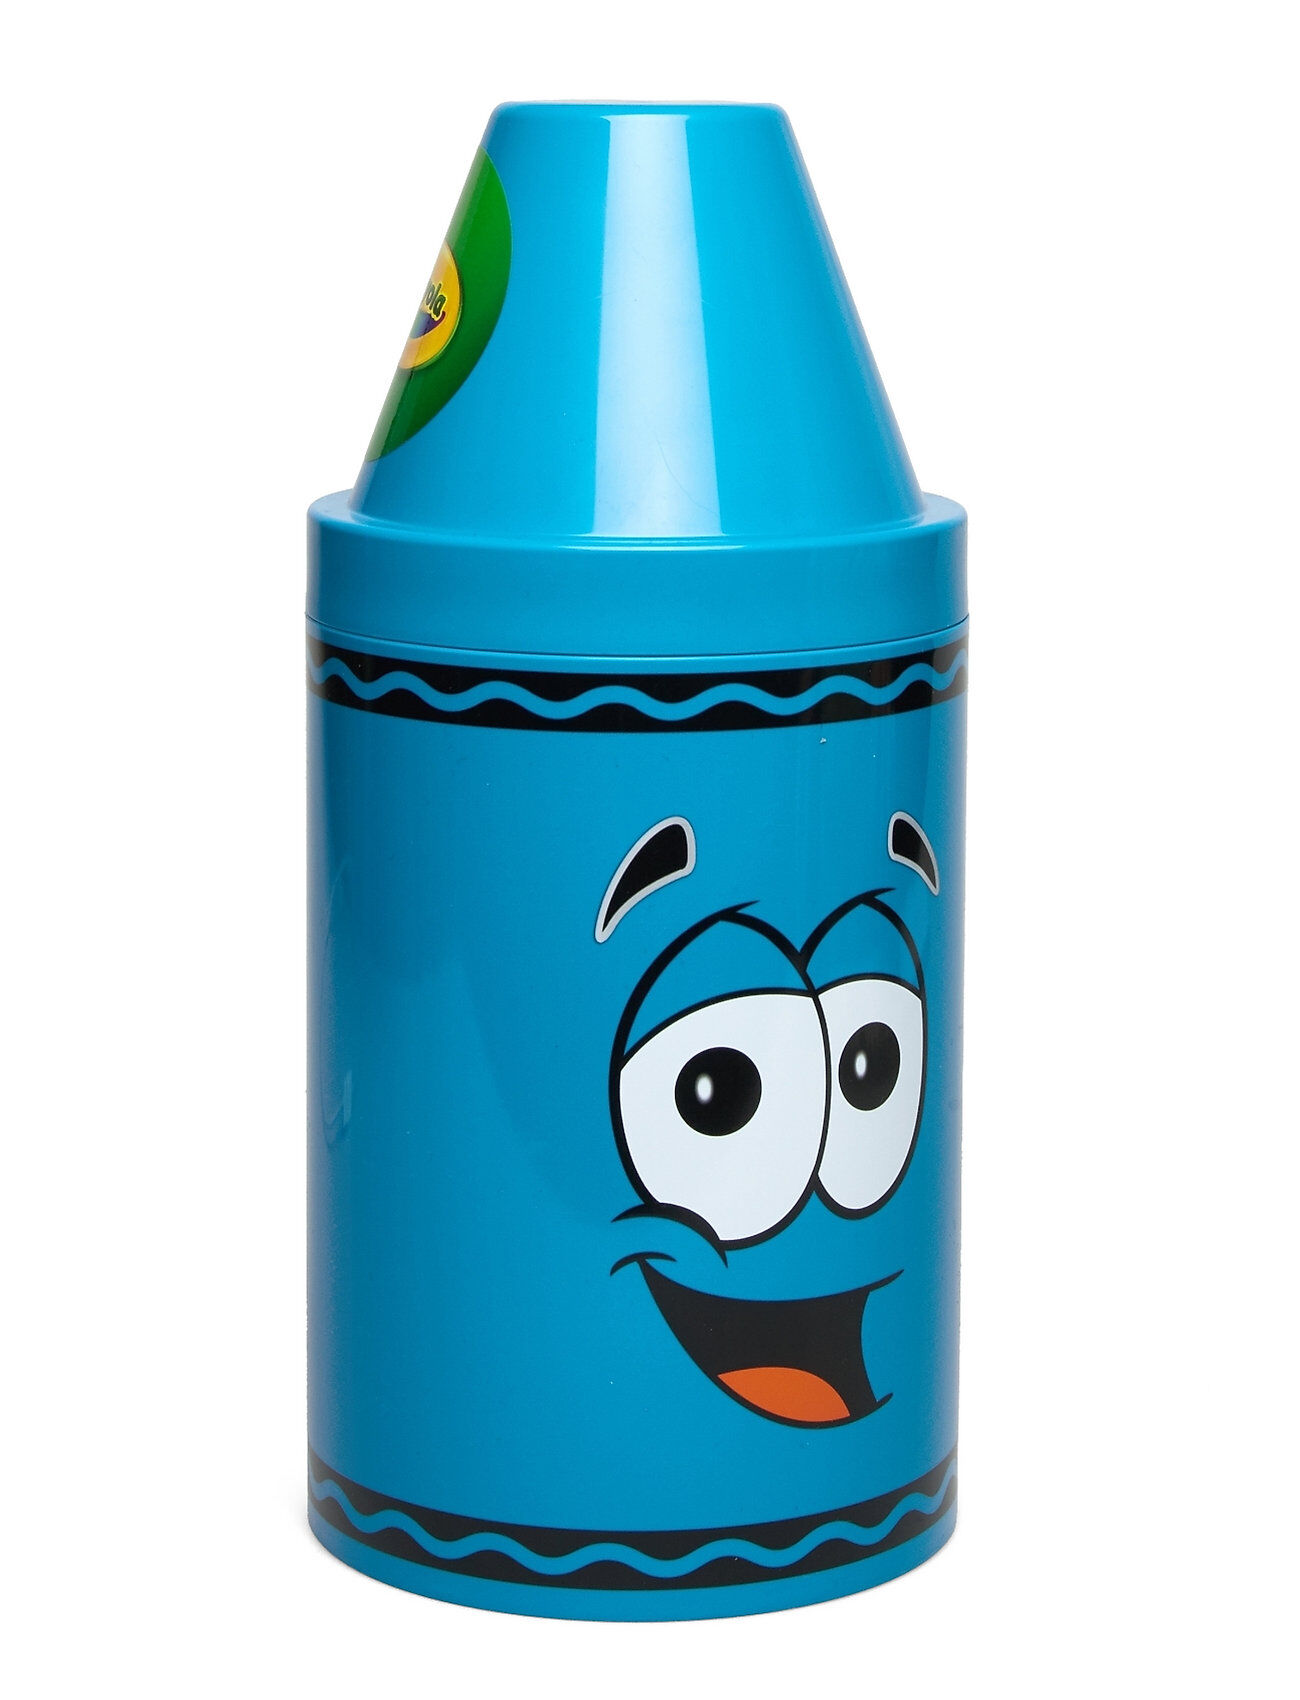 Crayola Storage Tip - Set Of 2 Pcs. Home Kids Decor Storage Blå CRAYOLA